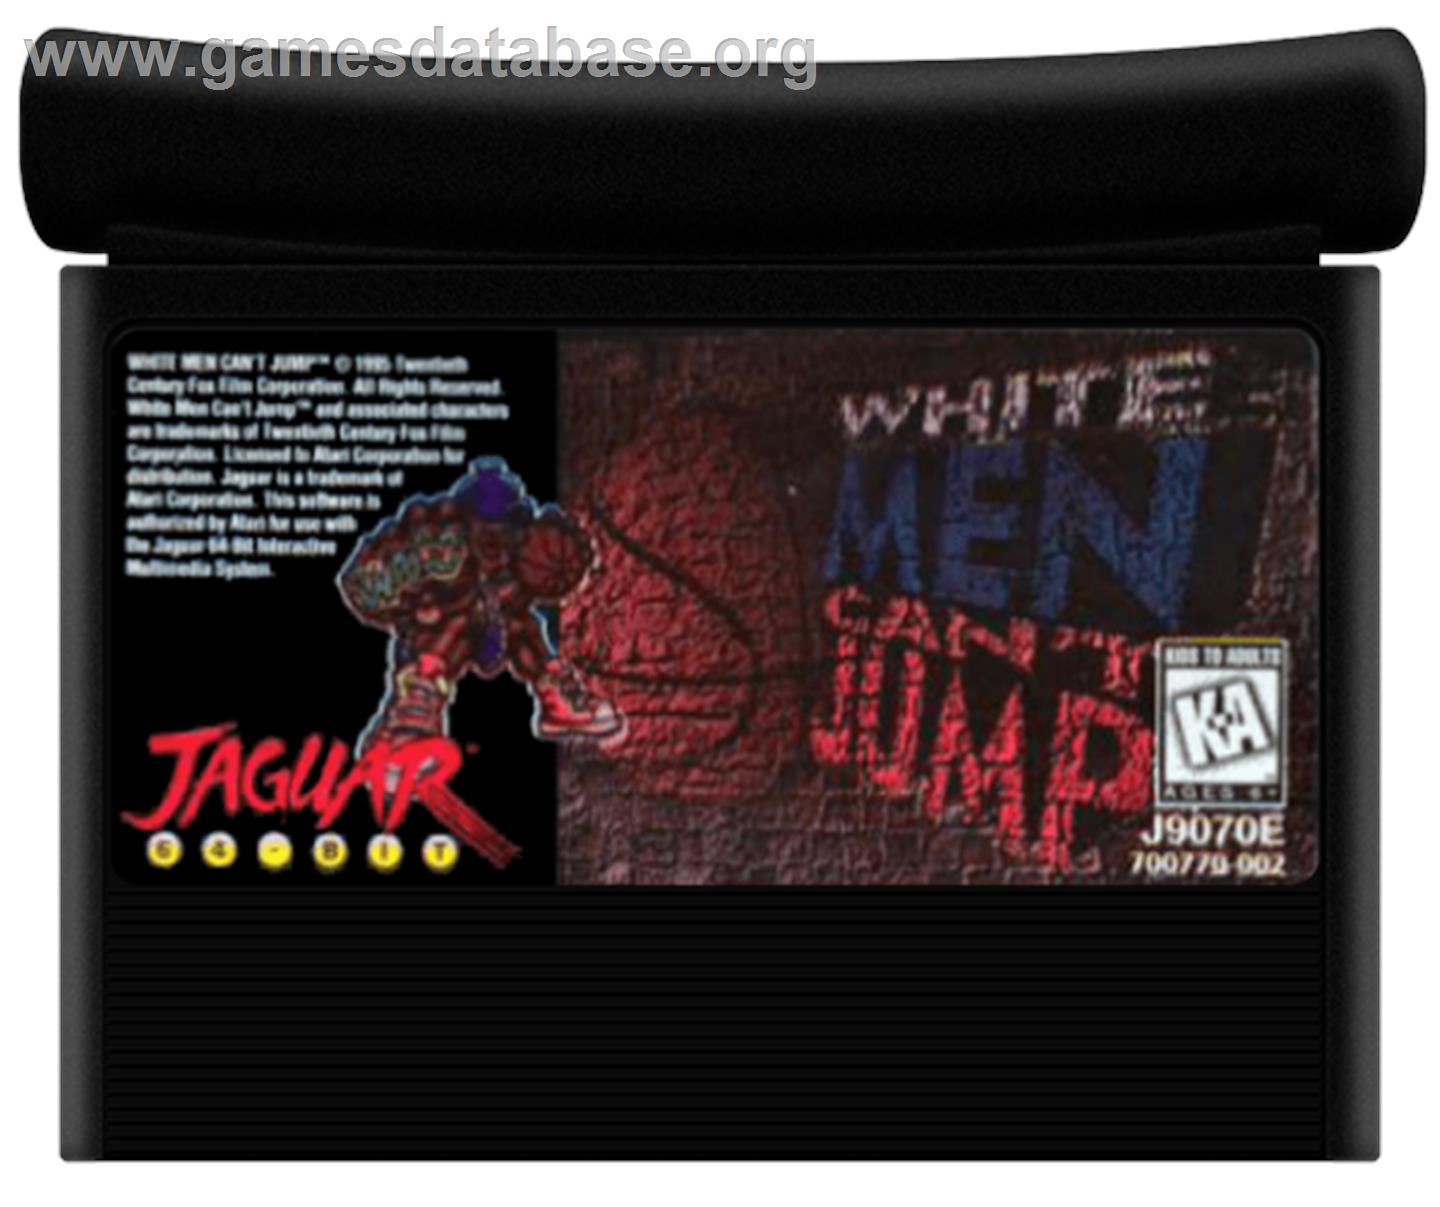 White Men Can't Jump - Atari Jaguar - Artwork - Cartridge